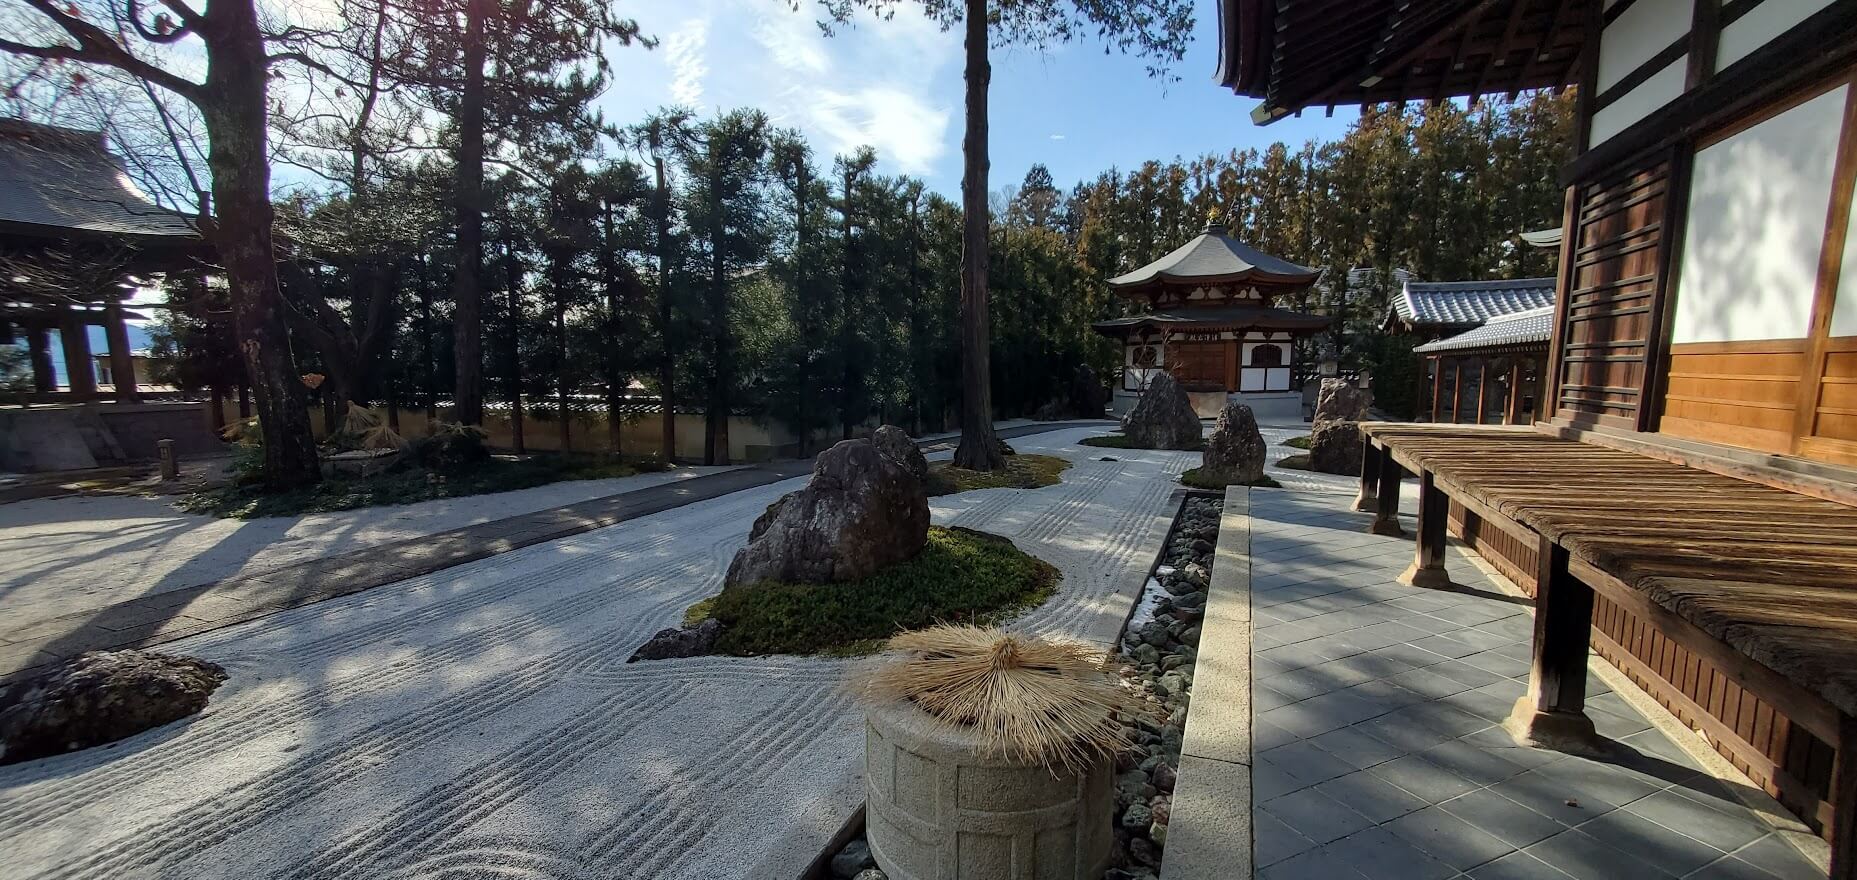 慈雲禅寺の奇跡の枯山水庭園